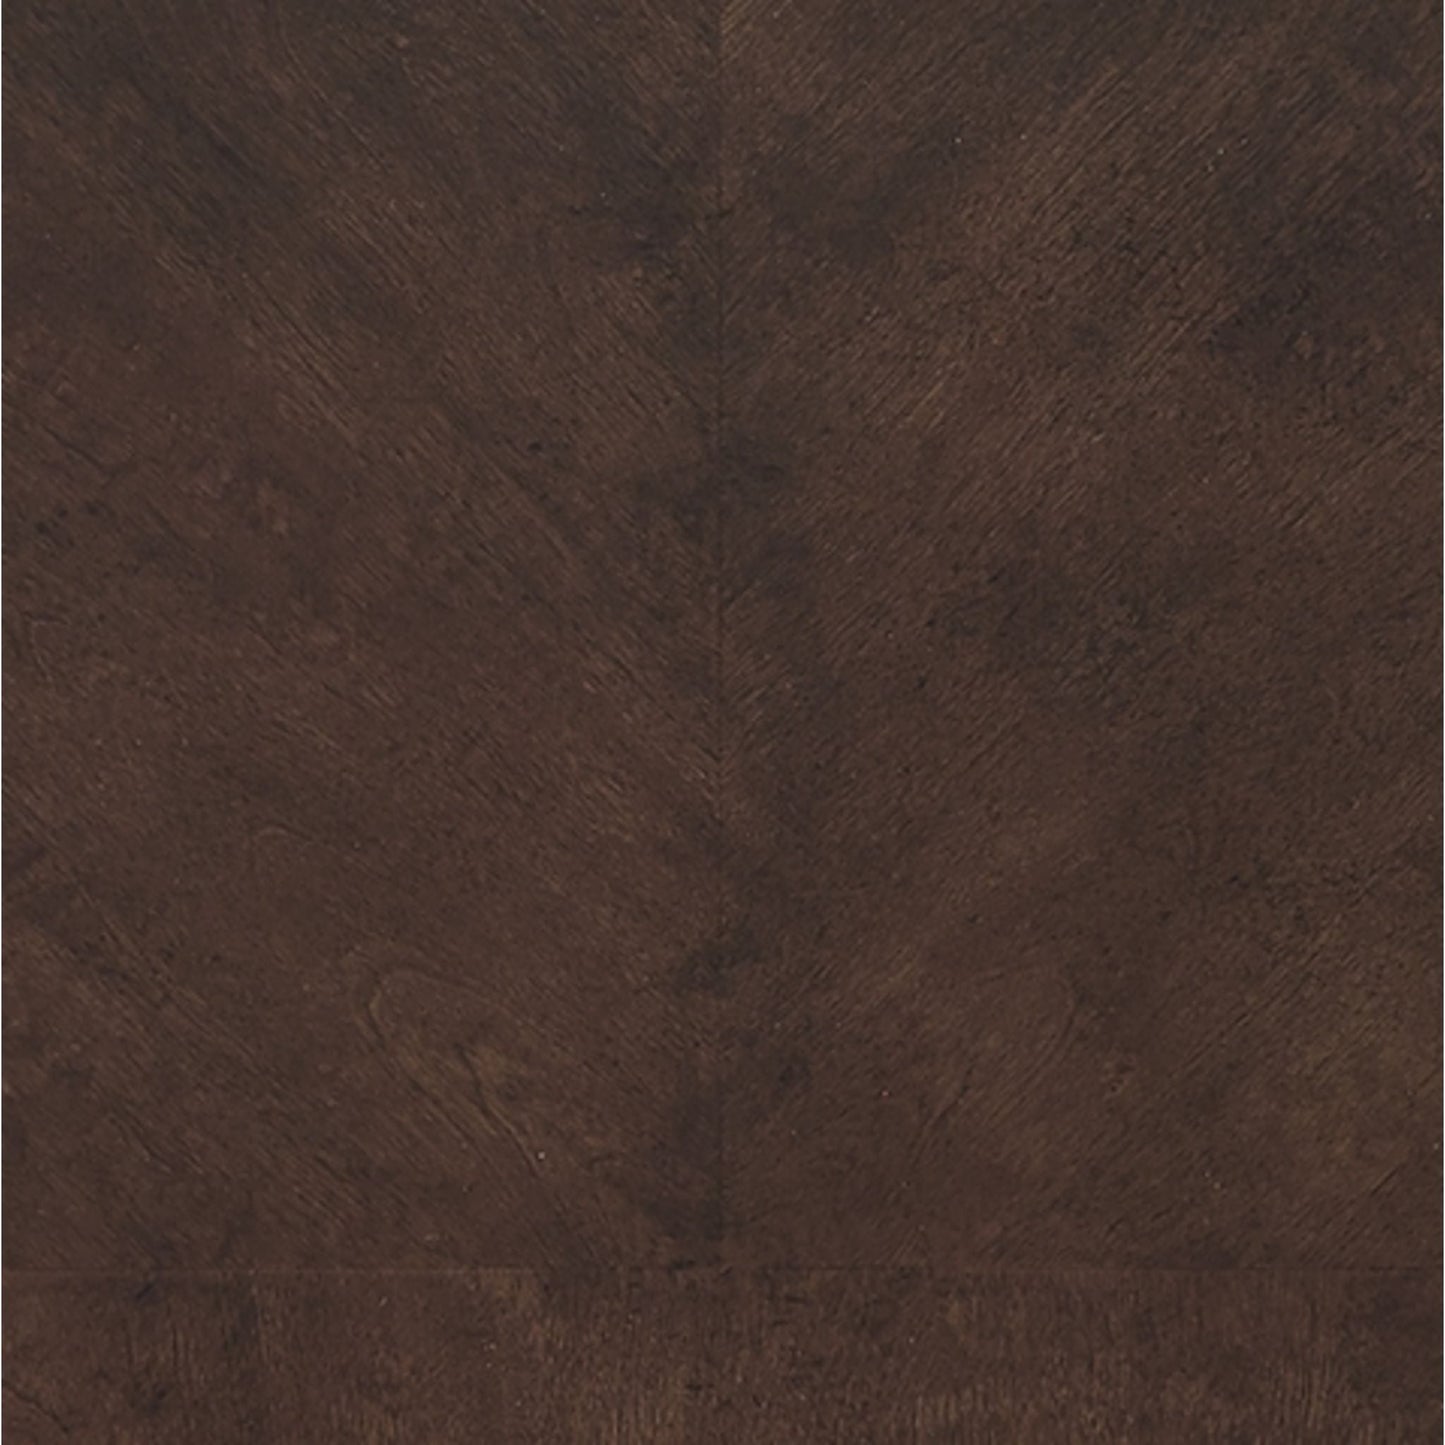 Hilmoore Table - Reddish Brown - (D677-35)